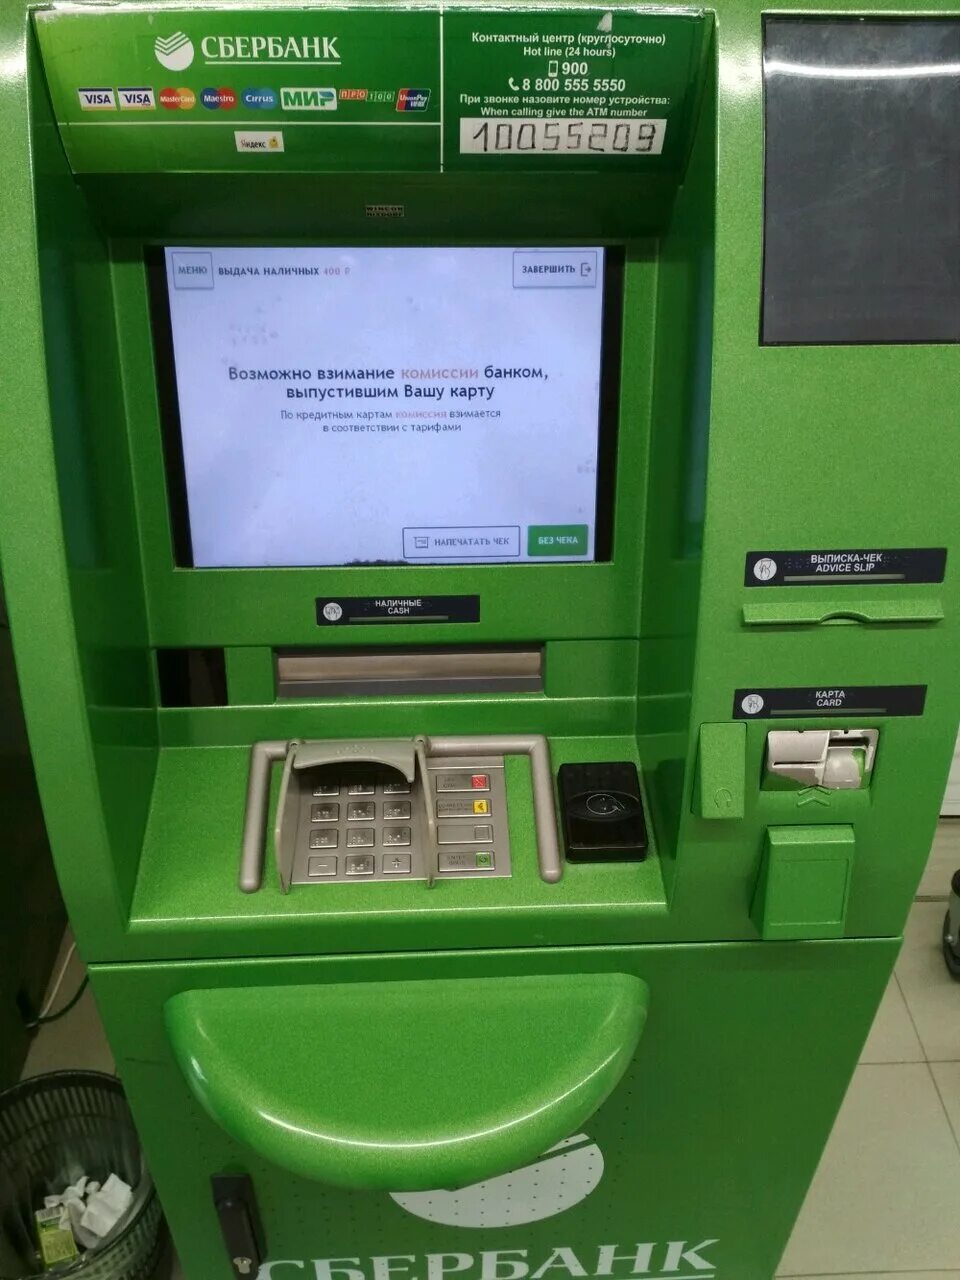 Банкомат Сбербанка 2022. Терминал Сбербанка. Неработающий терминал Сбербанка. Экран банкомата.